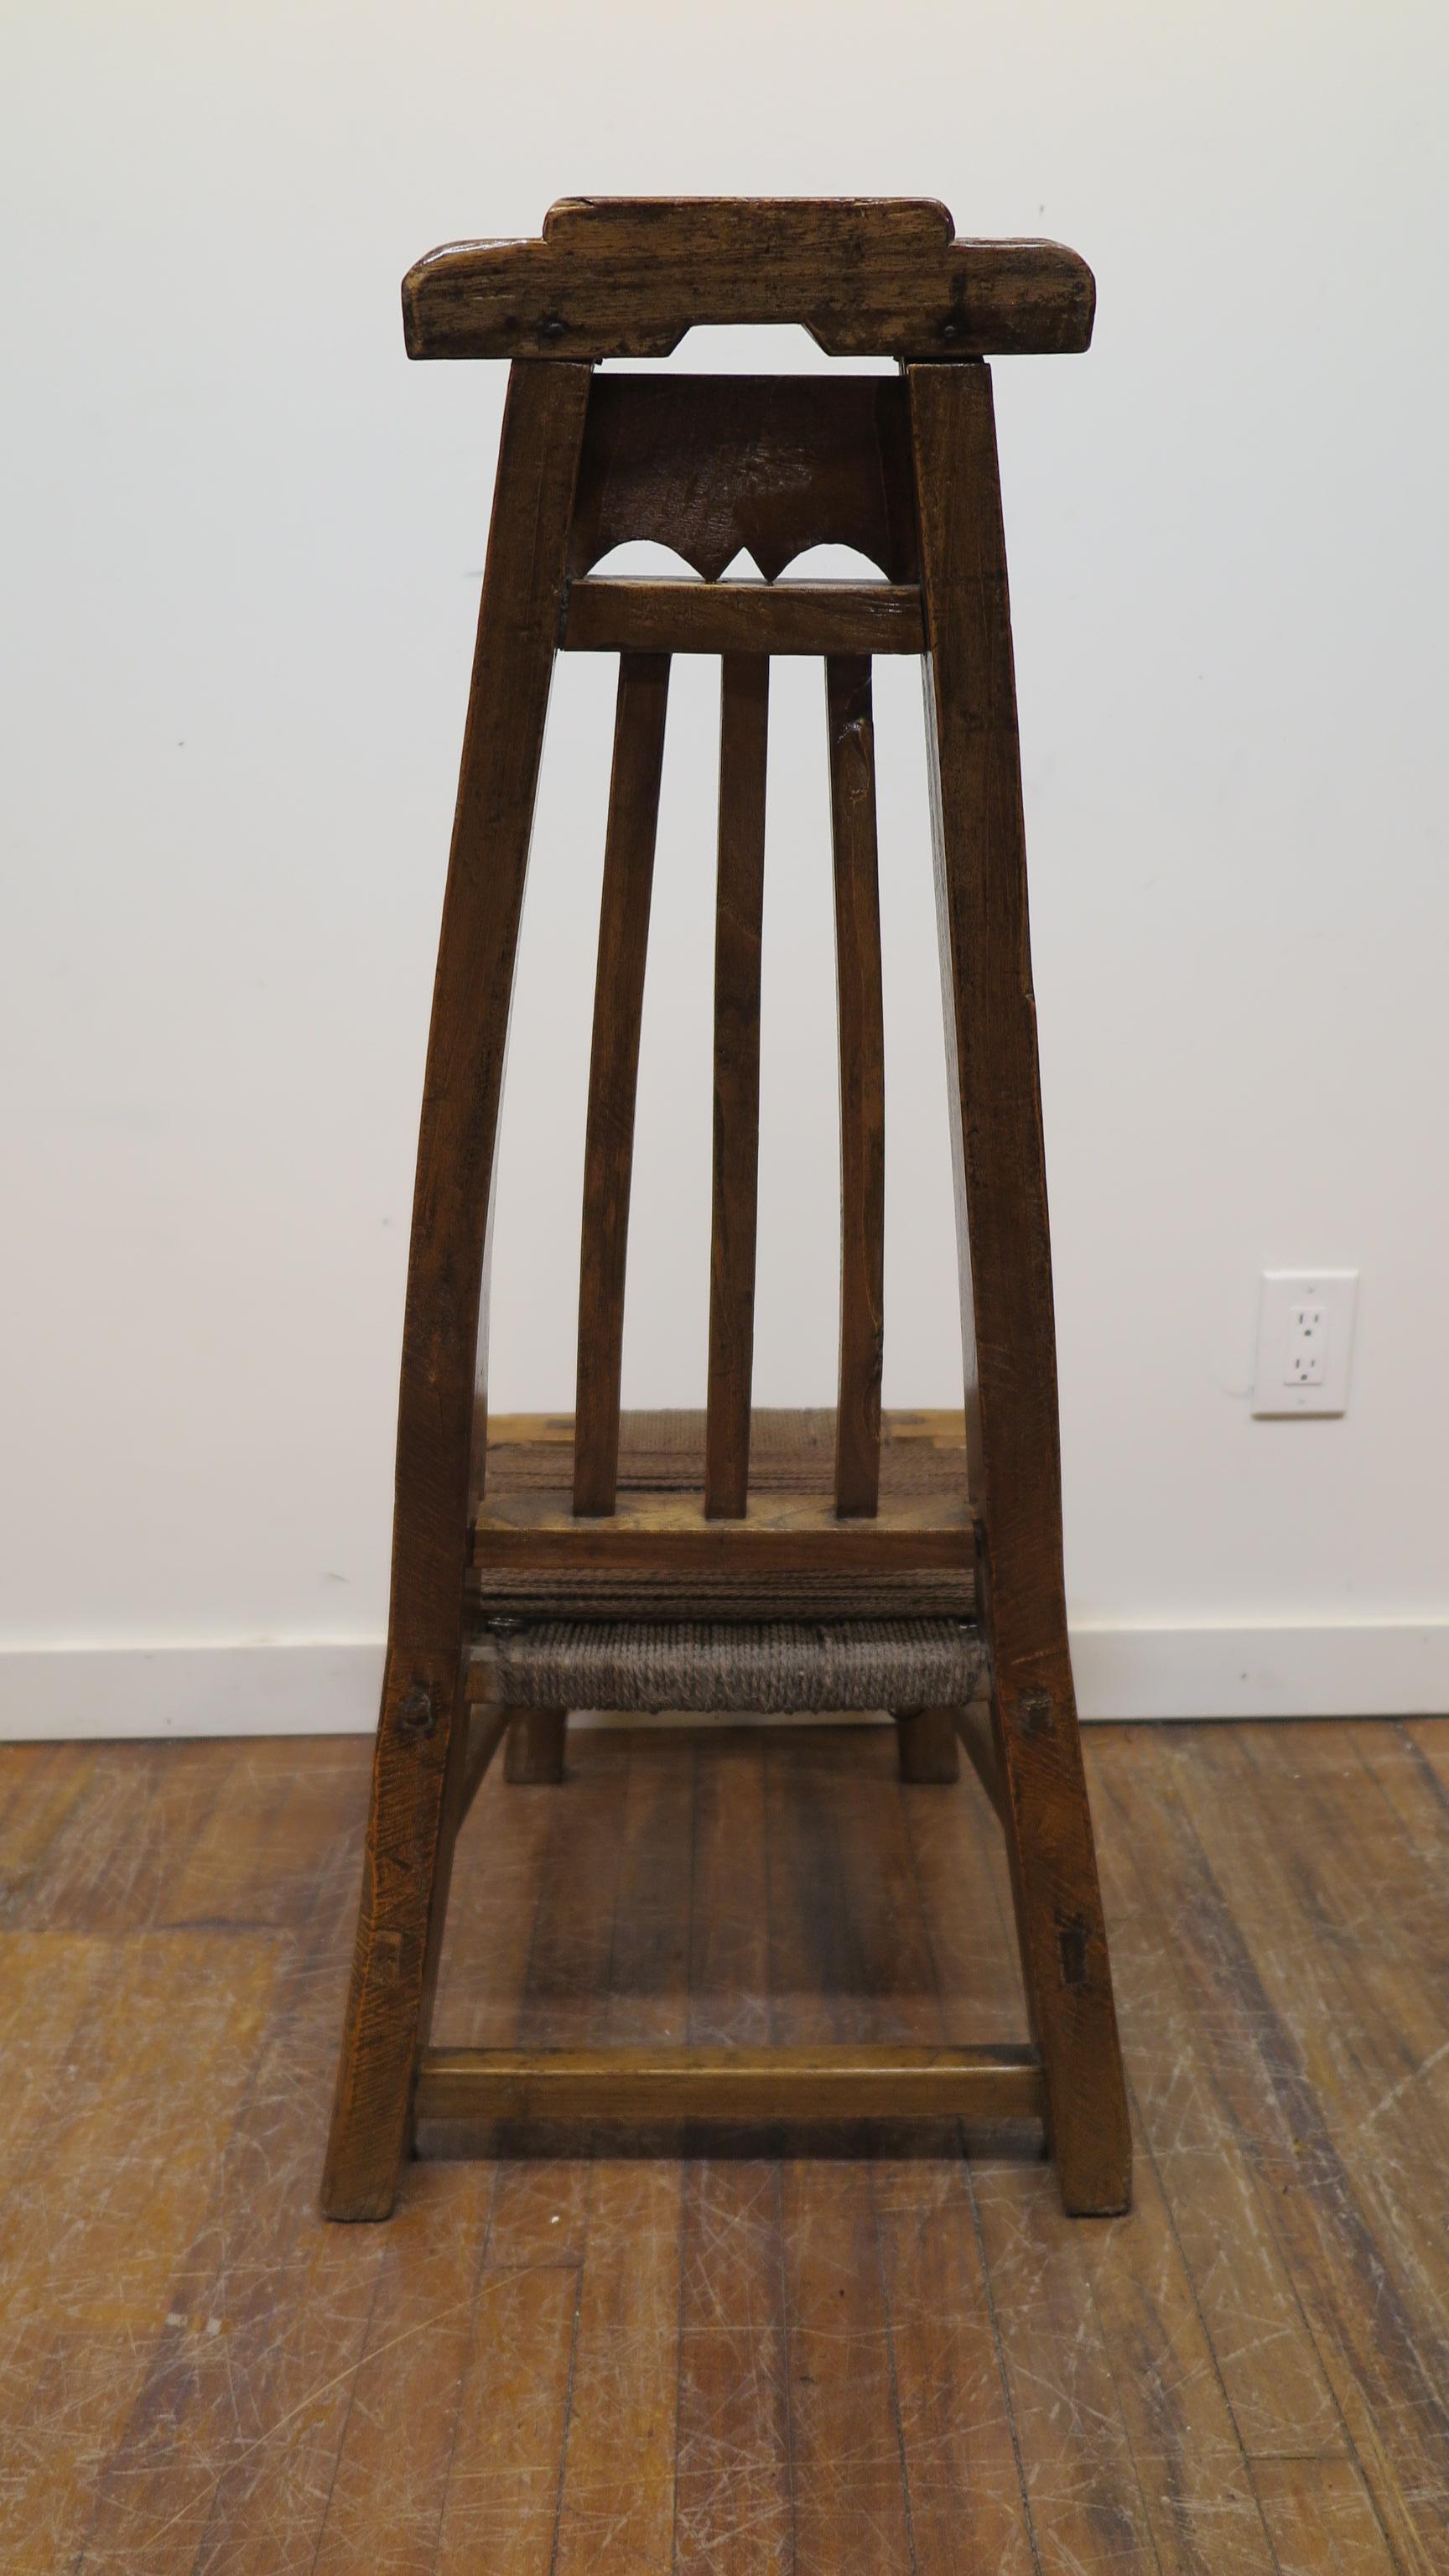 Primitive Chair 19th Century (Pappelholz)